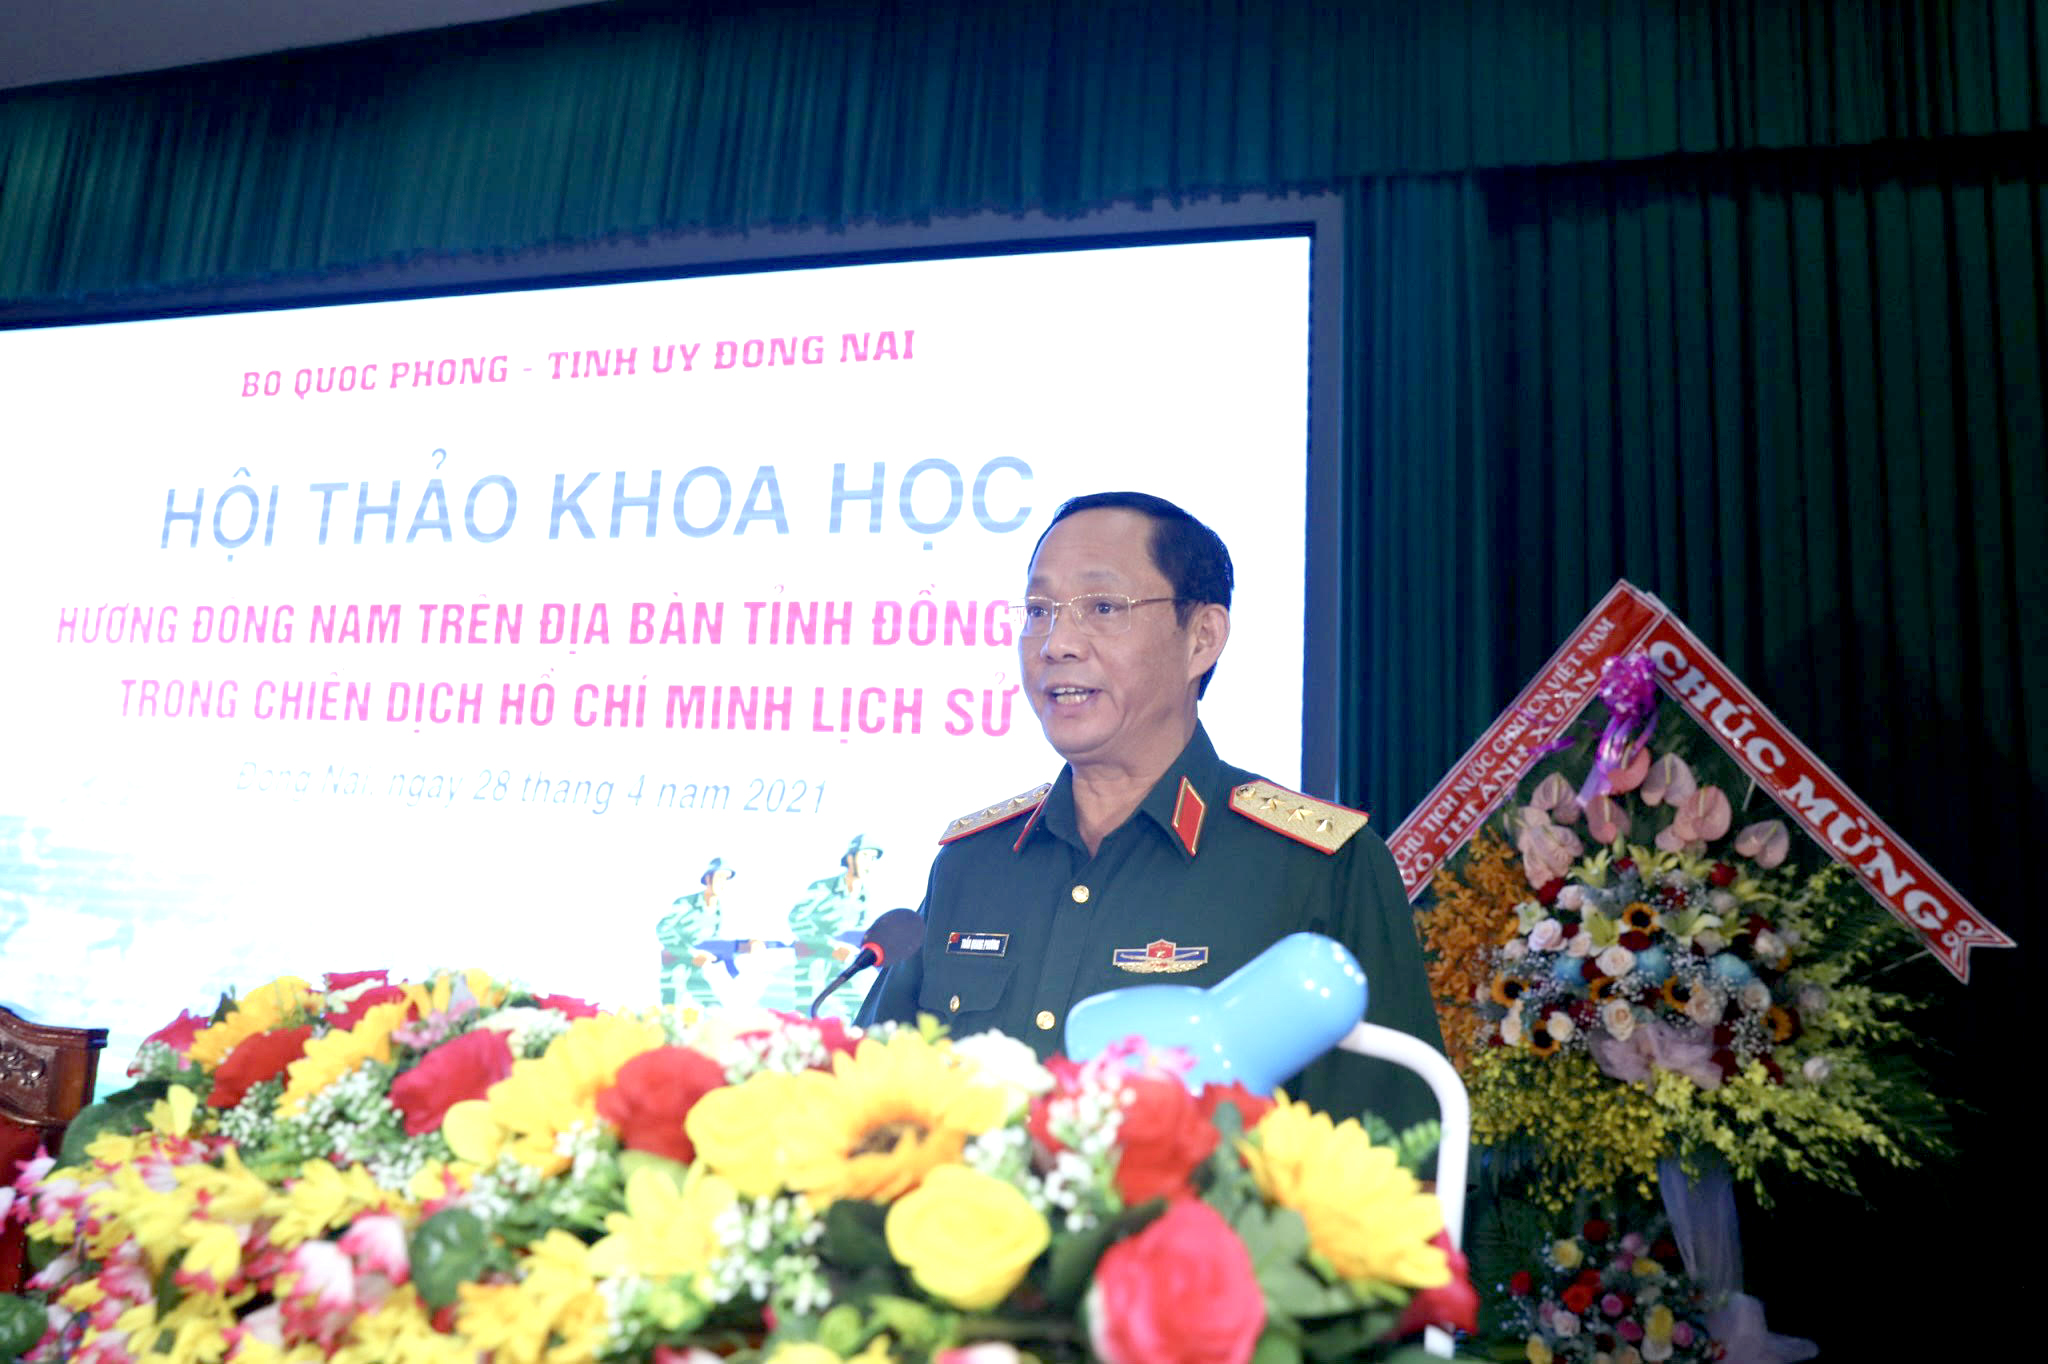 Ủy viên Quân ủy Trung ương, Phó Chủ nhiệm Tổng cục Chính trị Quân đội nhân dân Việt Nam, Thượng tướng Trần Quang Phương phát biểu tại hội thảo.